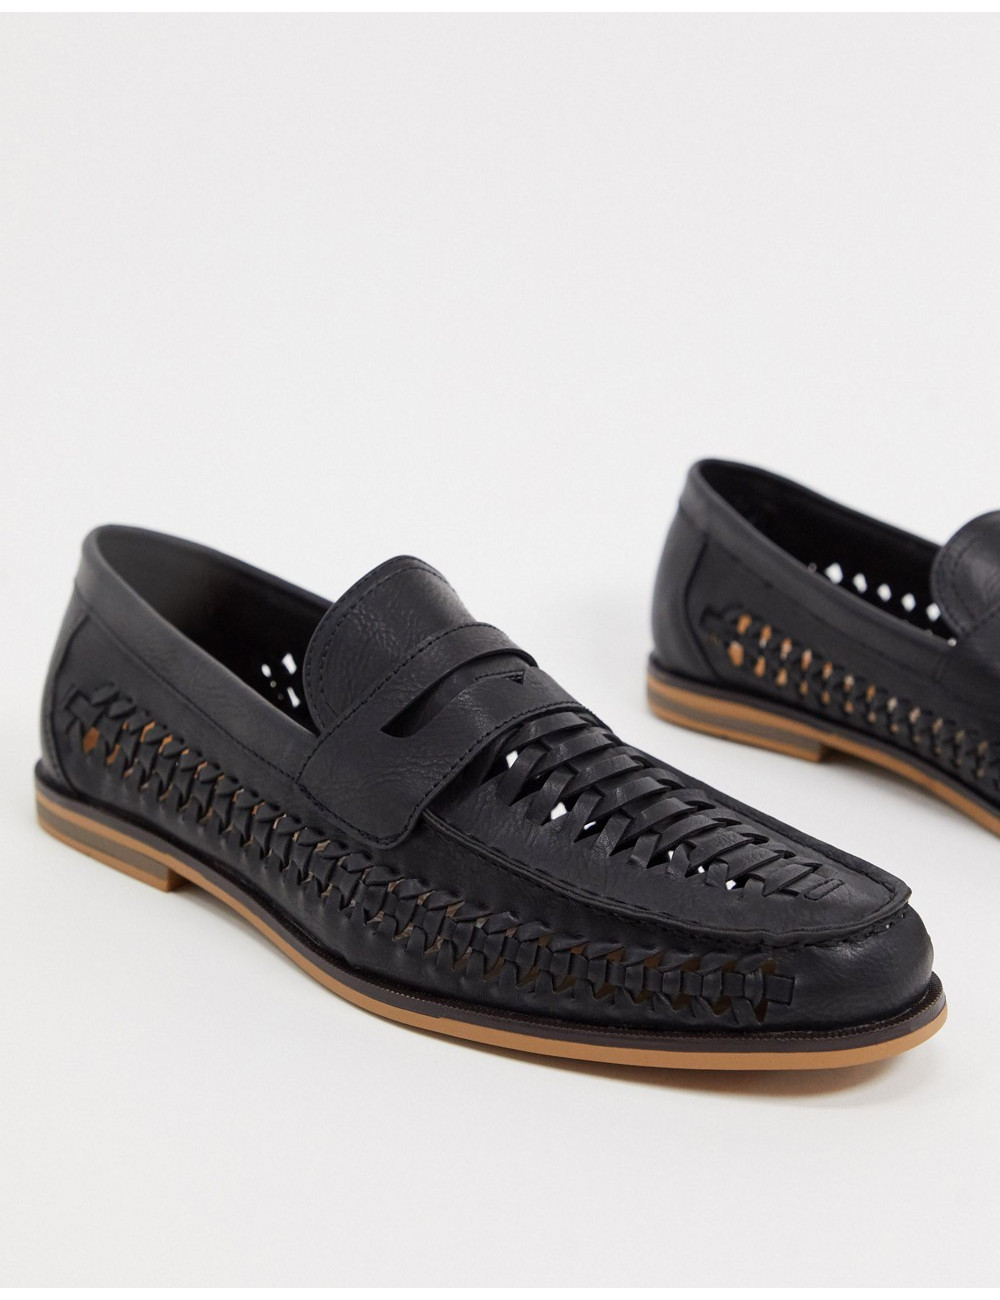 Topman woven loafers in black